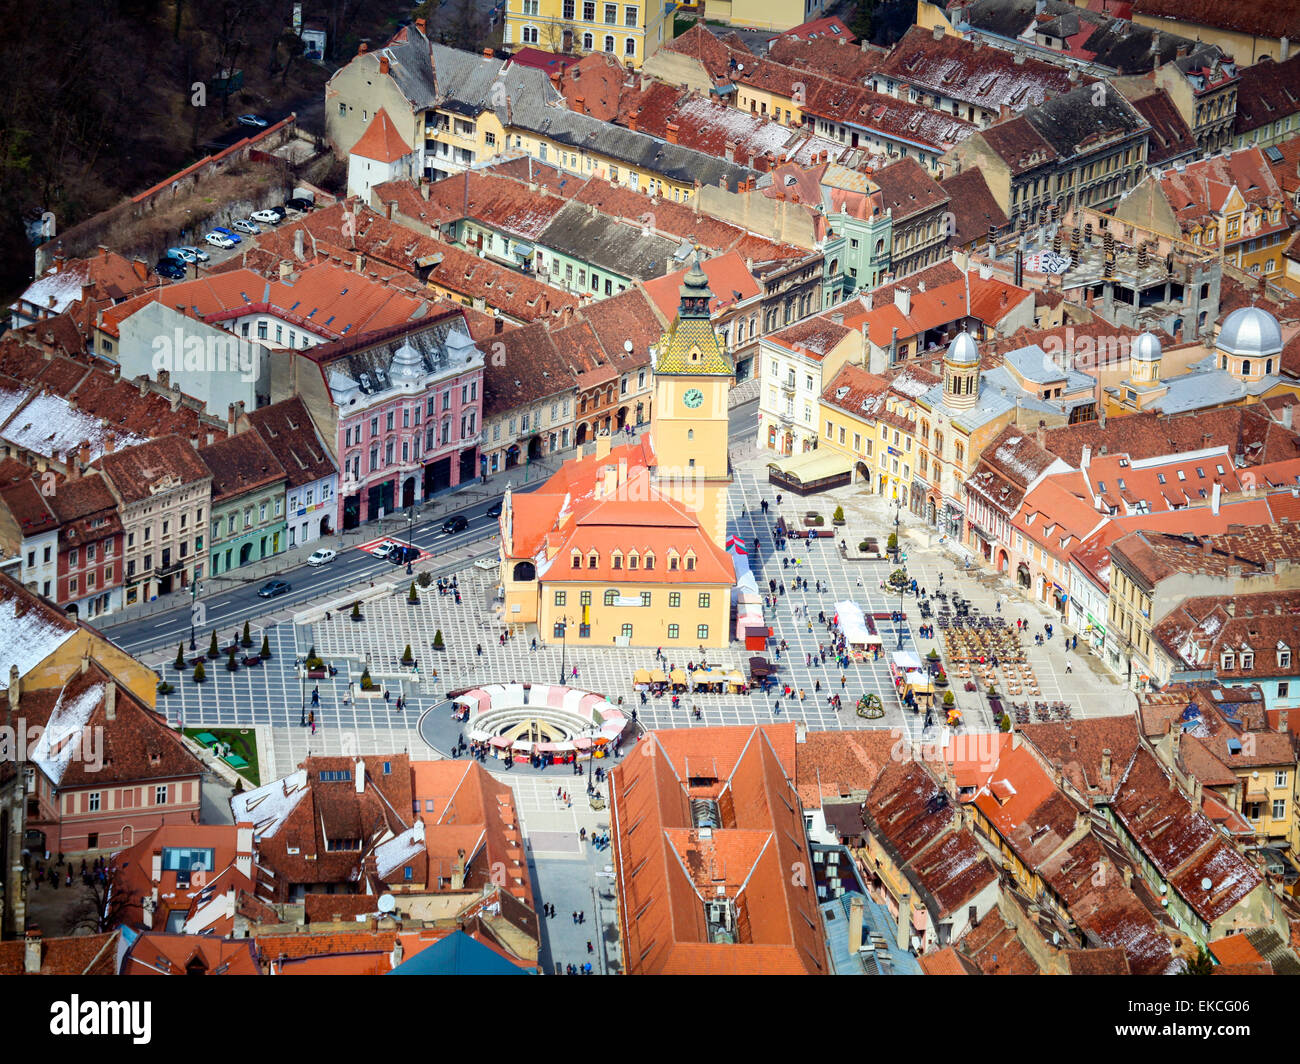 Old town square in Brasov, Romania Stock Photo